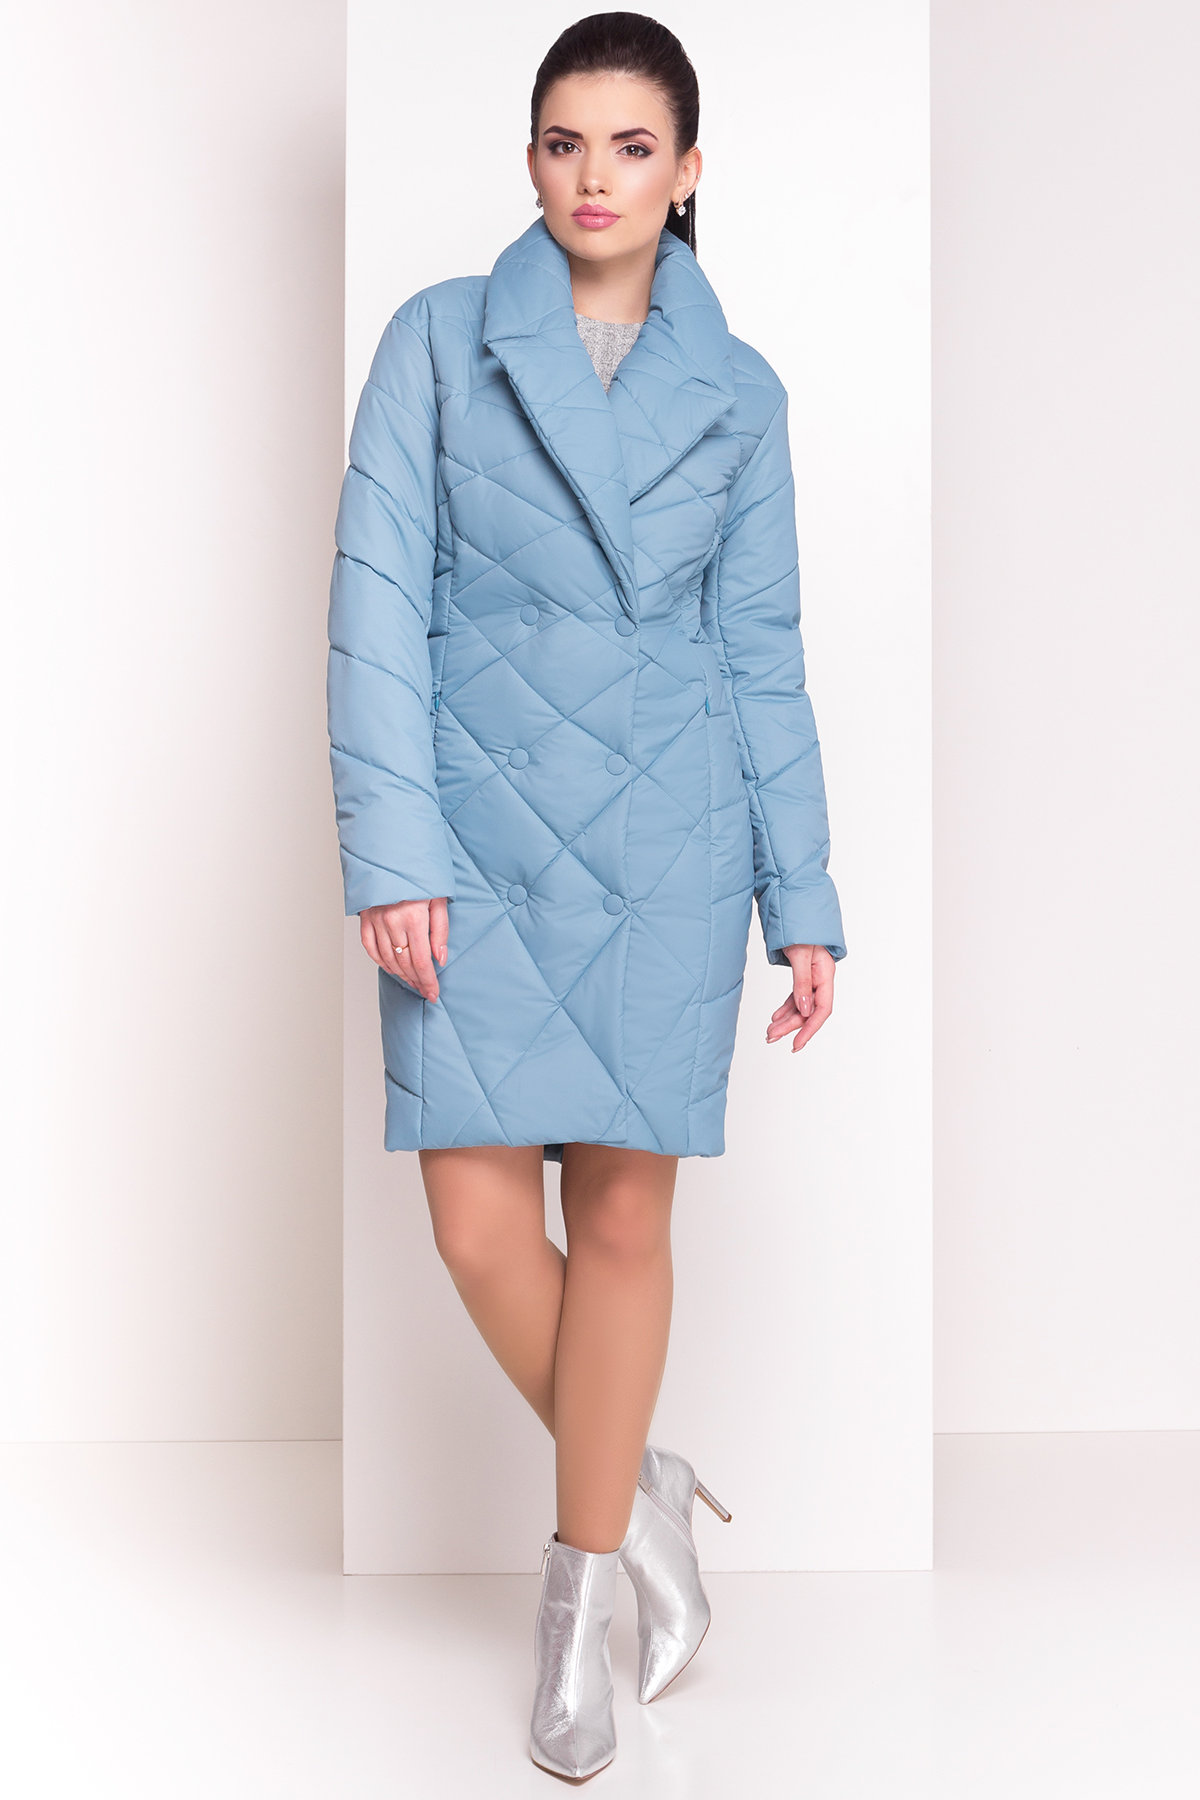 Стеганое демисезонное пальто-куртка Сандра 4526 АРТ. 21524 Цвет: Голубой - фото 1, интернет магазин tm-modus.ru